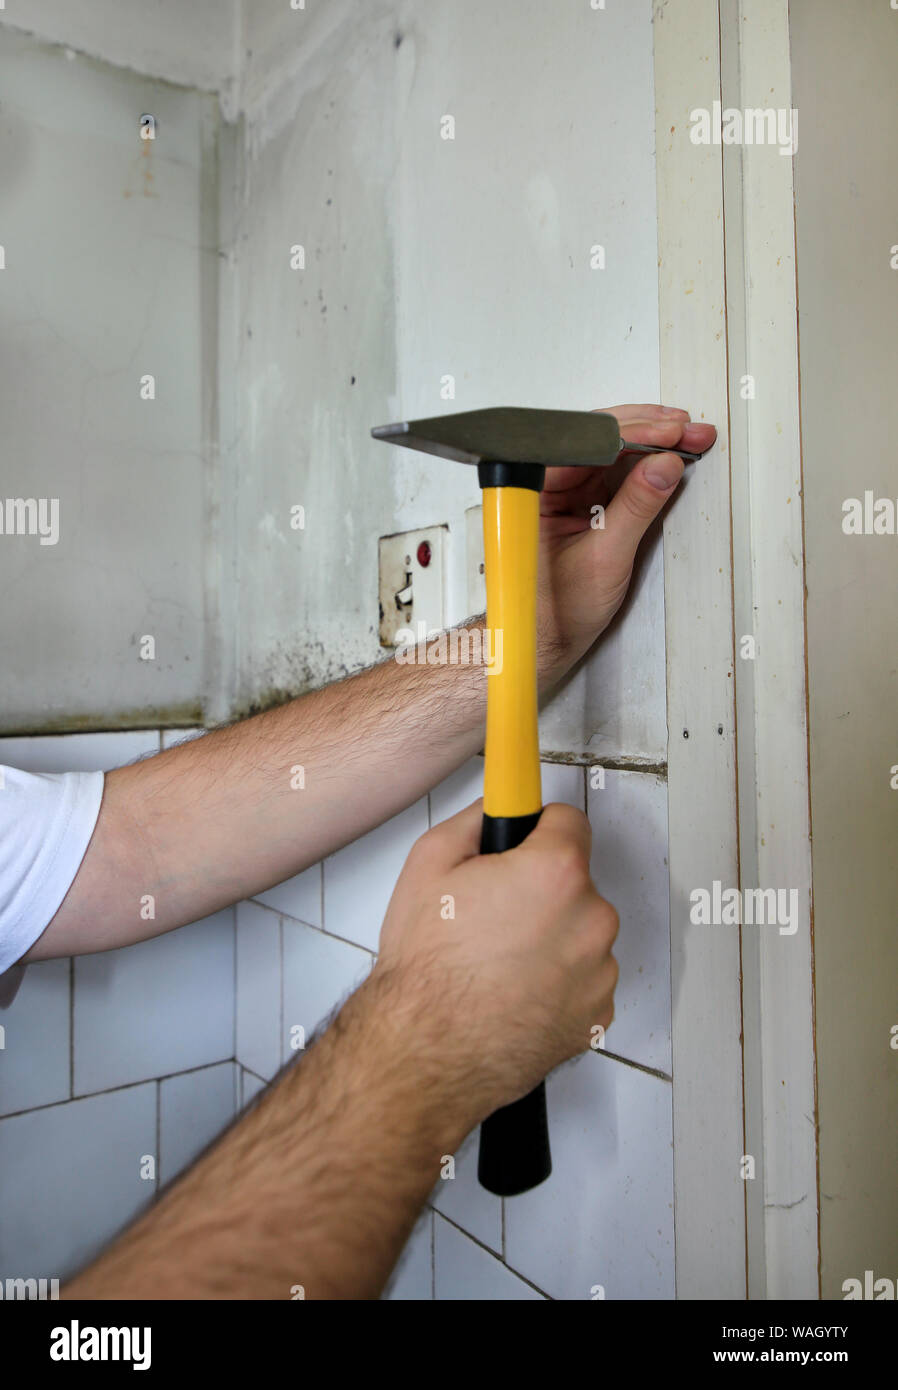 Bauarbeiter und Handwerker arbeiten auf Renovierungsarbeiten. Builder mit gelben Hammer und Nägel, einen Nagel in die Wand der Küche Tür. Stockfoto